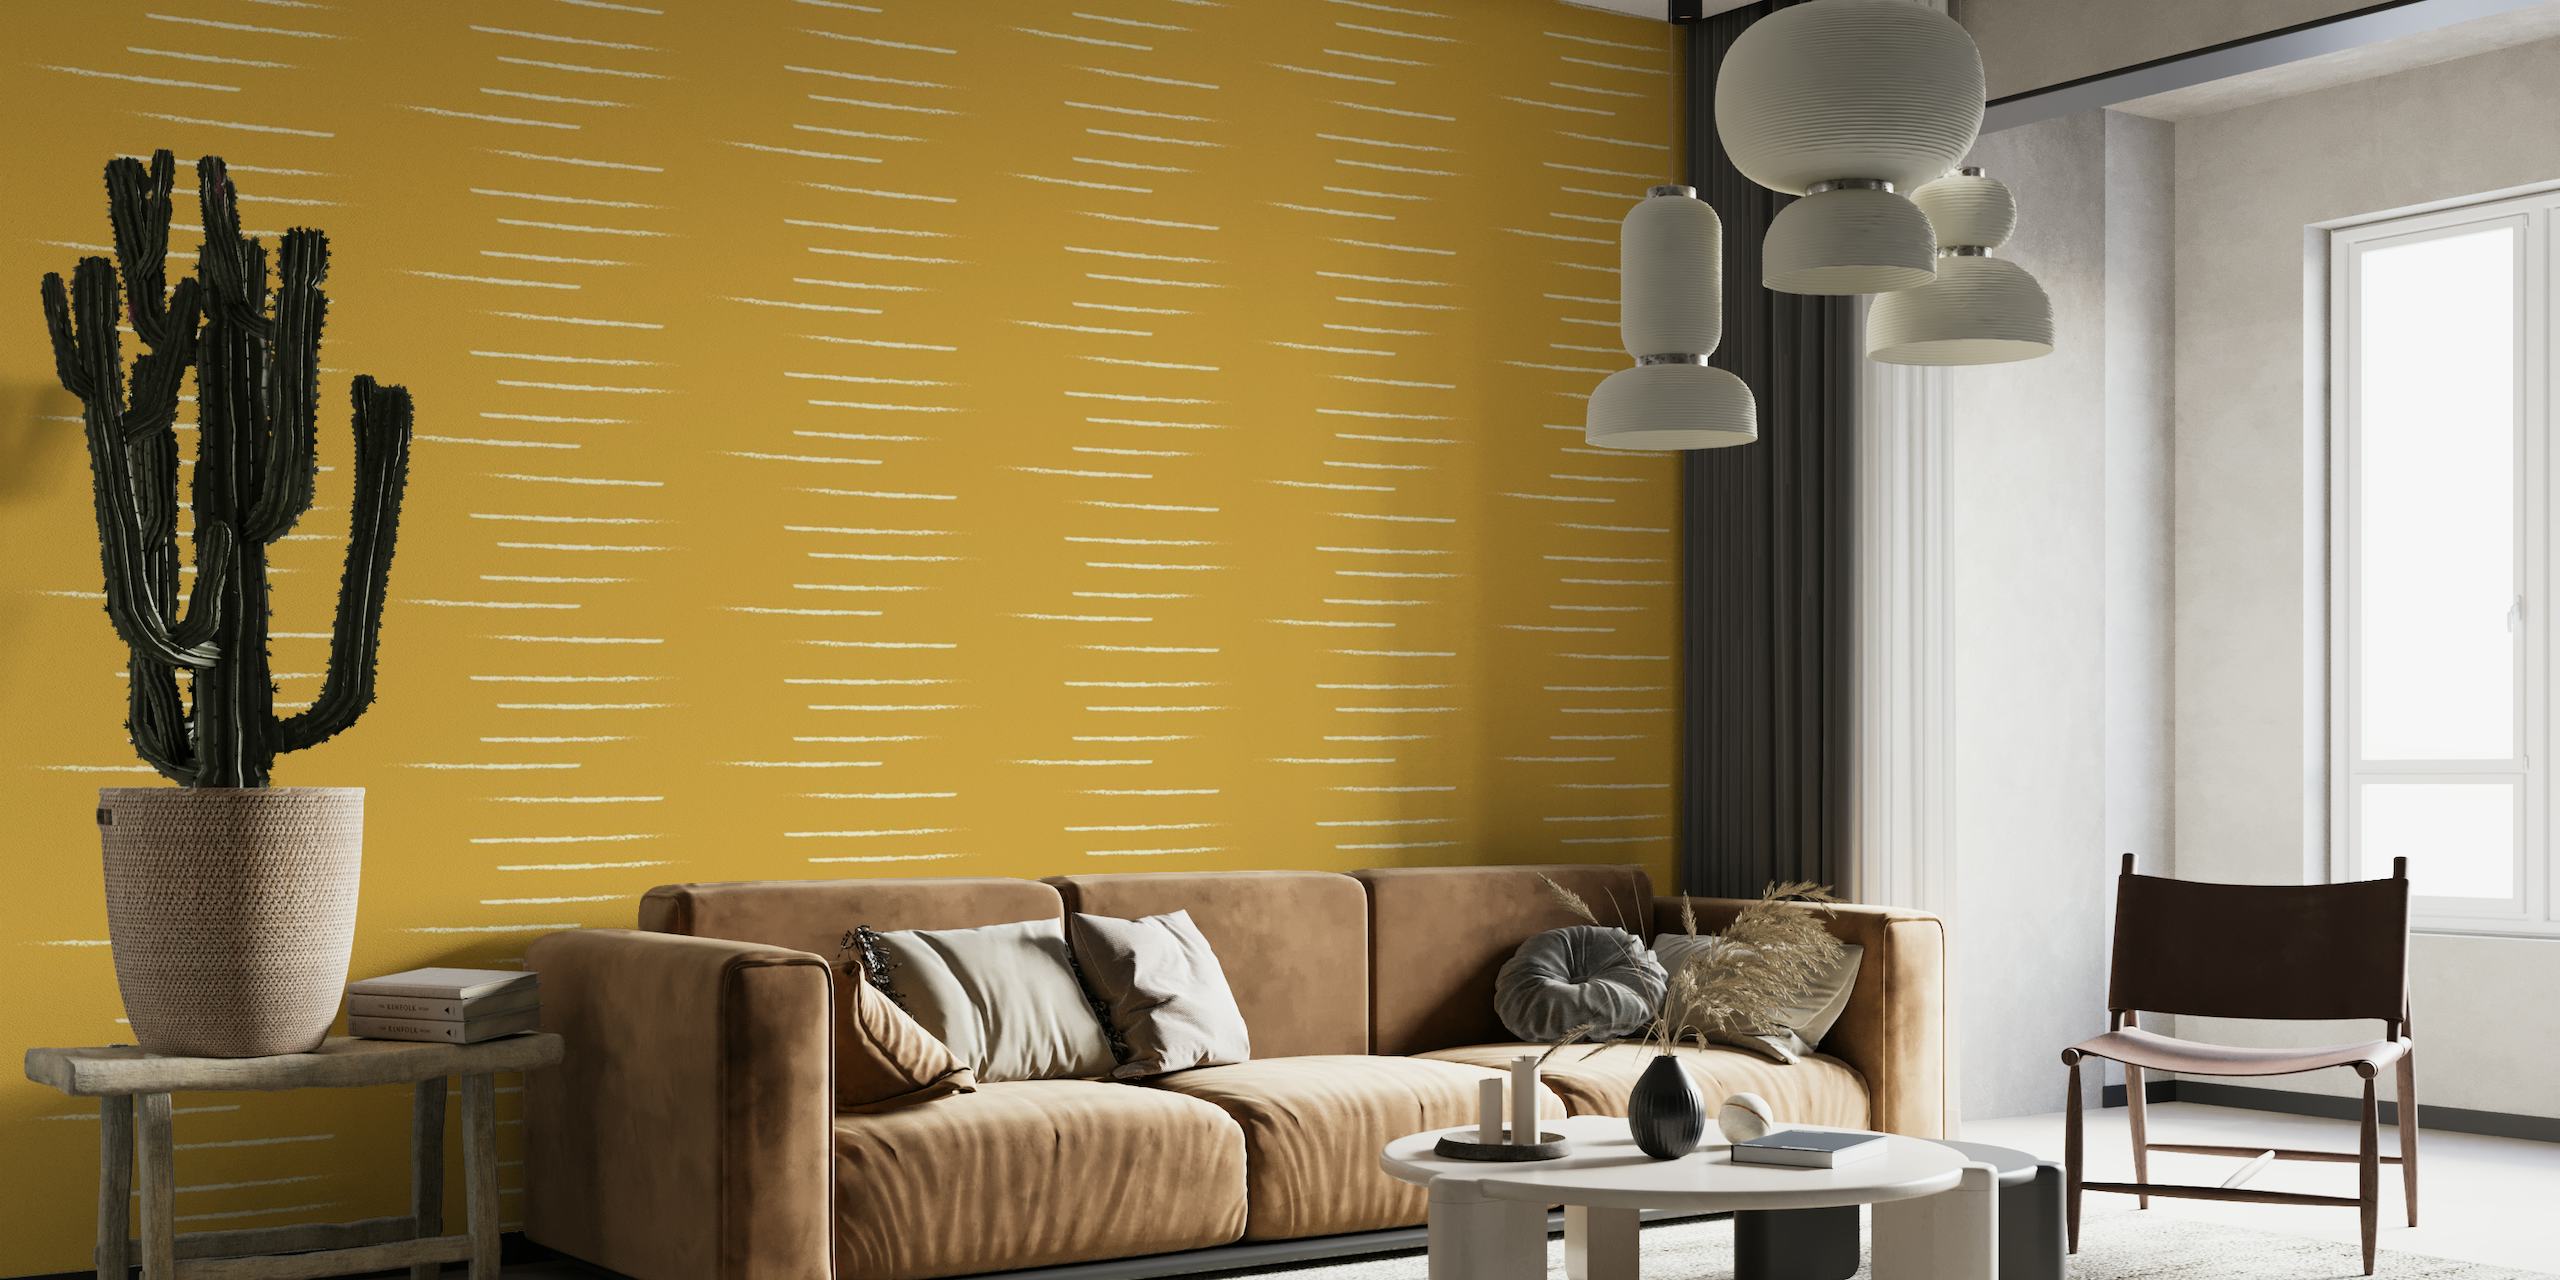 Vodoravni prugasti zidni mural u bež tonovima senfa koji odražava topli i minimalistički stil